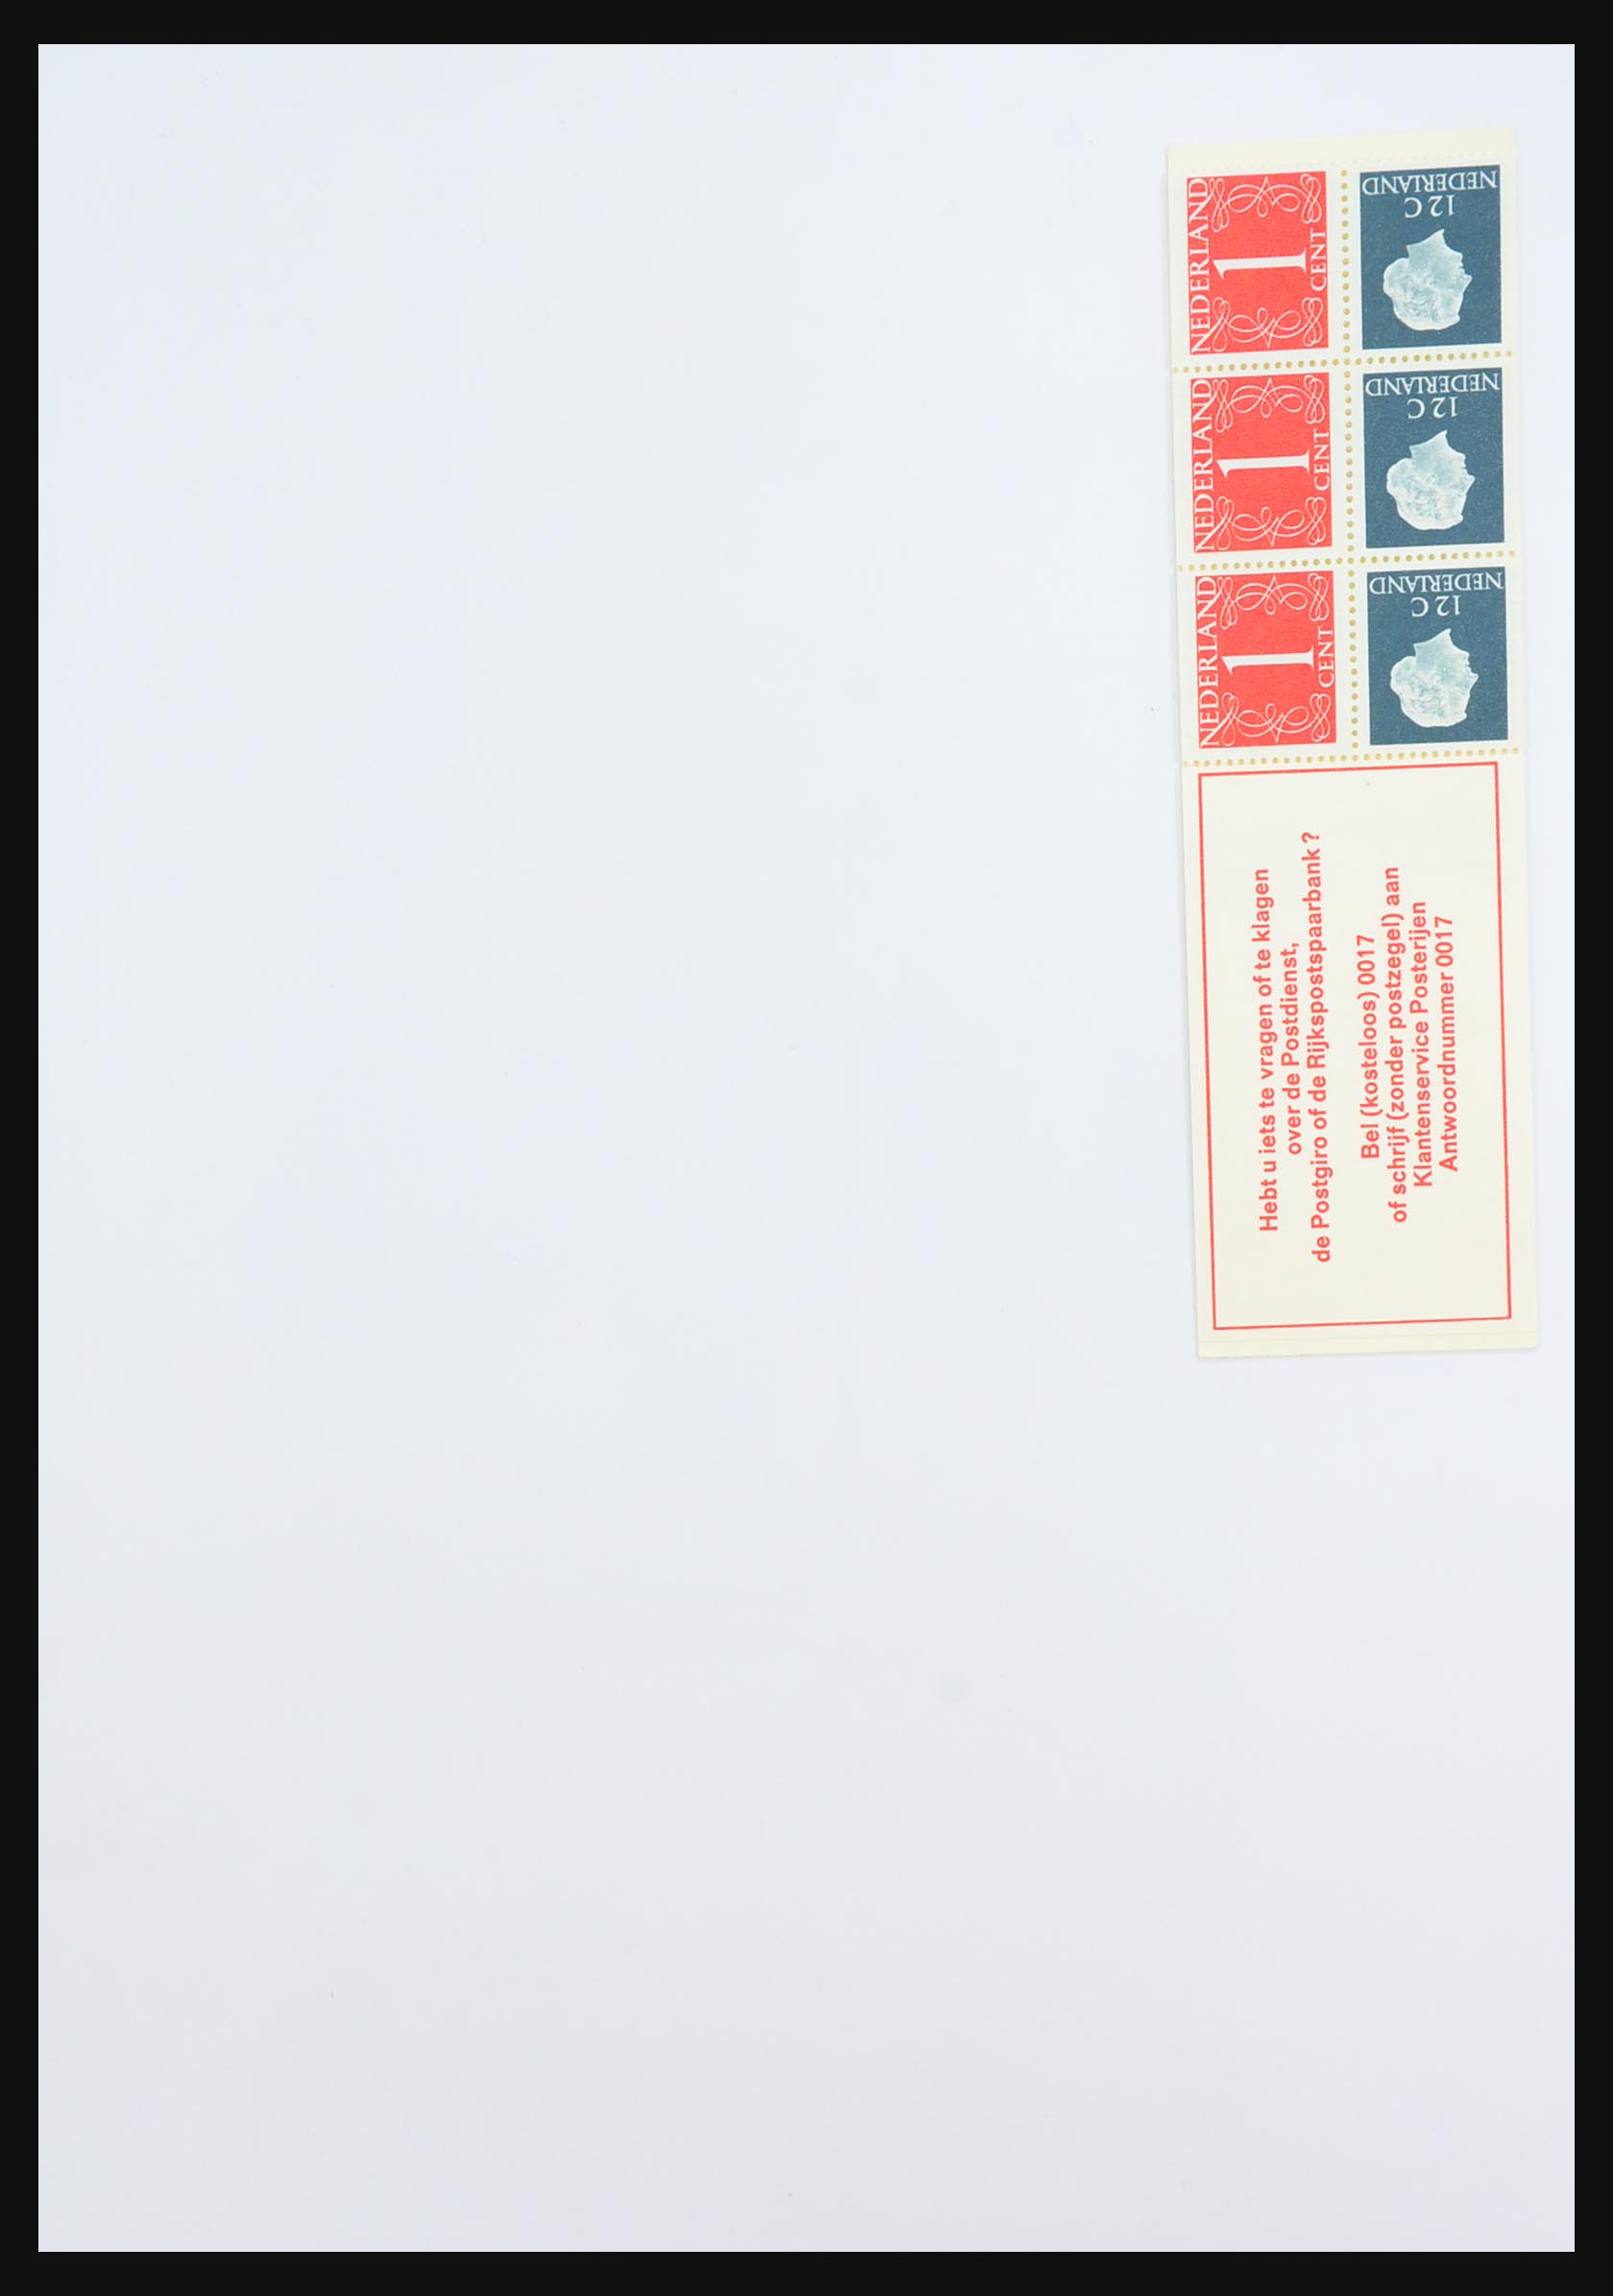 31311 028 - 31311 Netherlands stamp booklets 1964-1994.